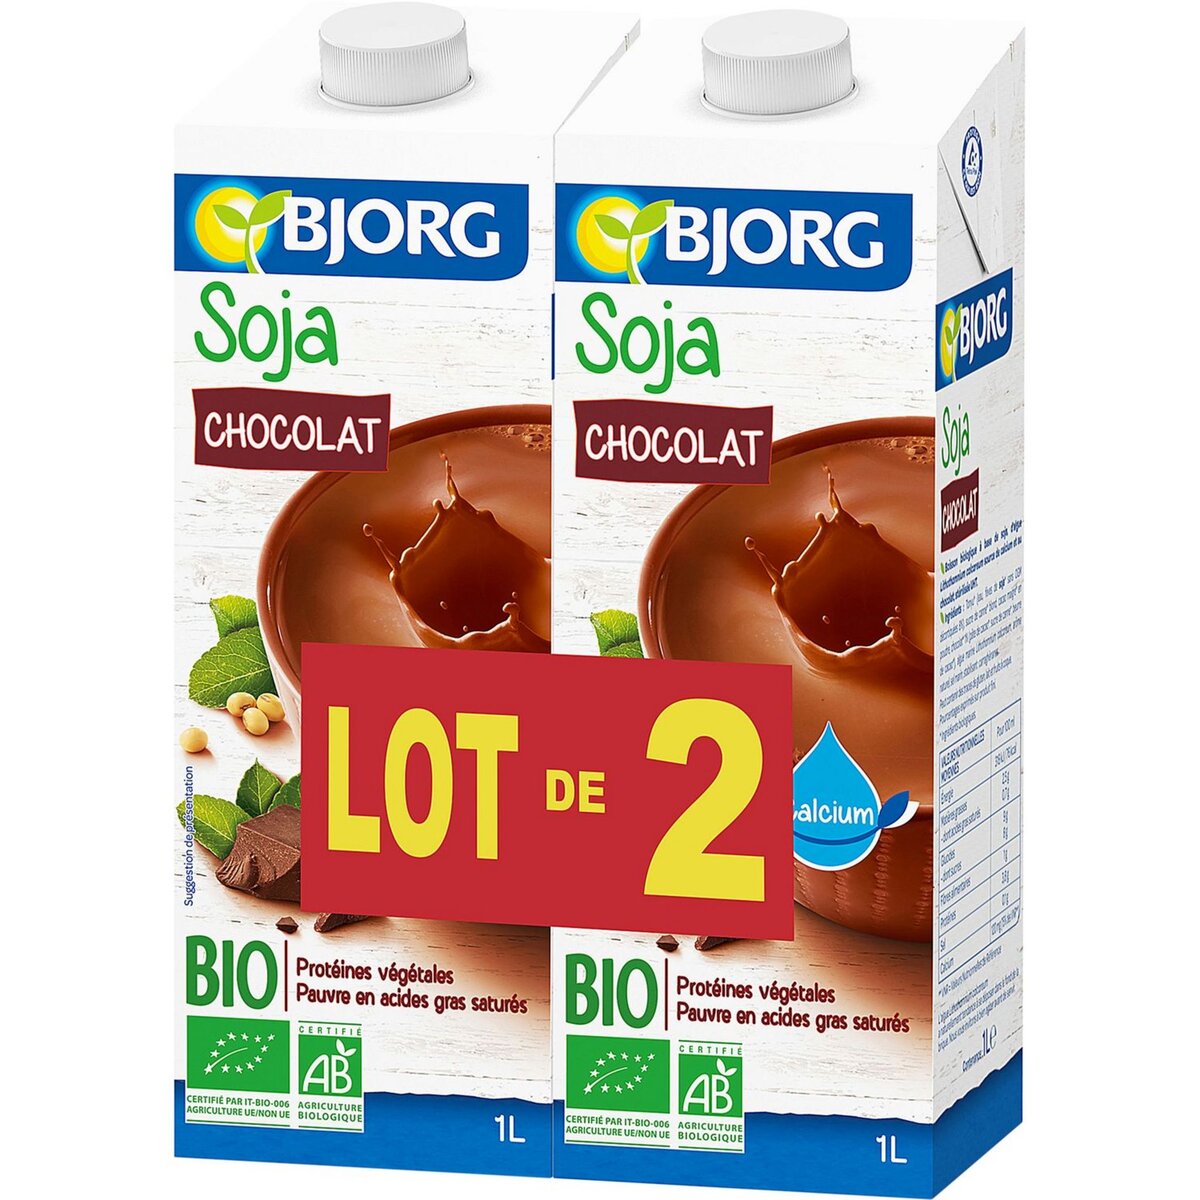 BJORG Bjorg soja chocolat bio calcium 2x1l